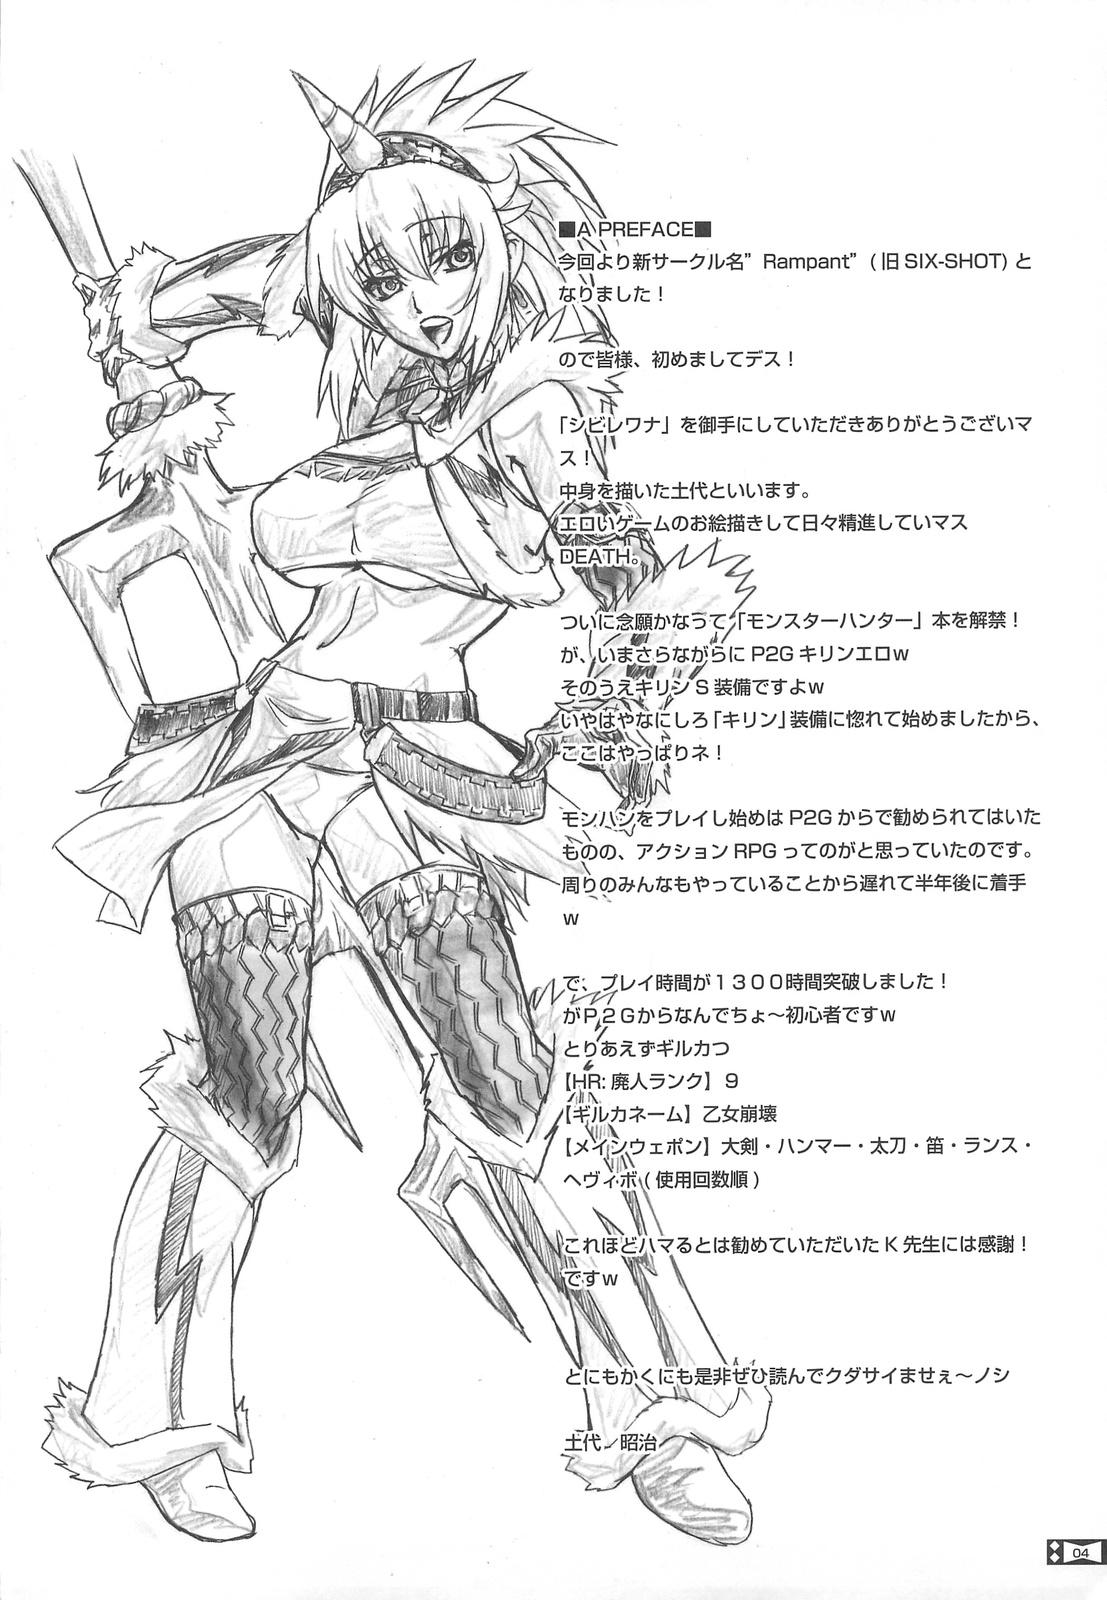 Worship Shibire Wana - Monster hunter Bunduda - Page 4